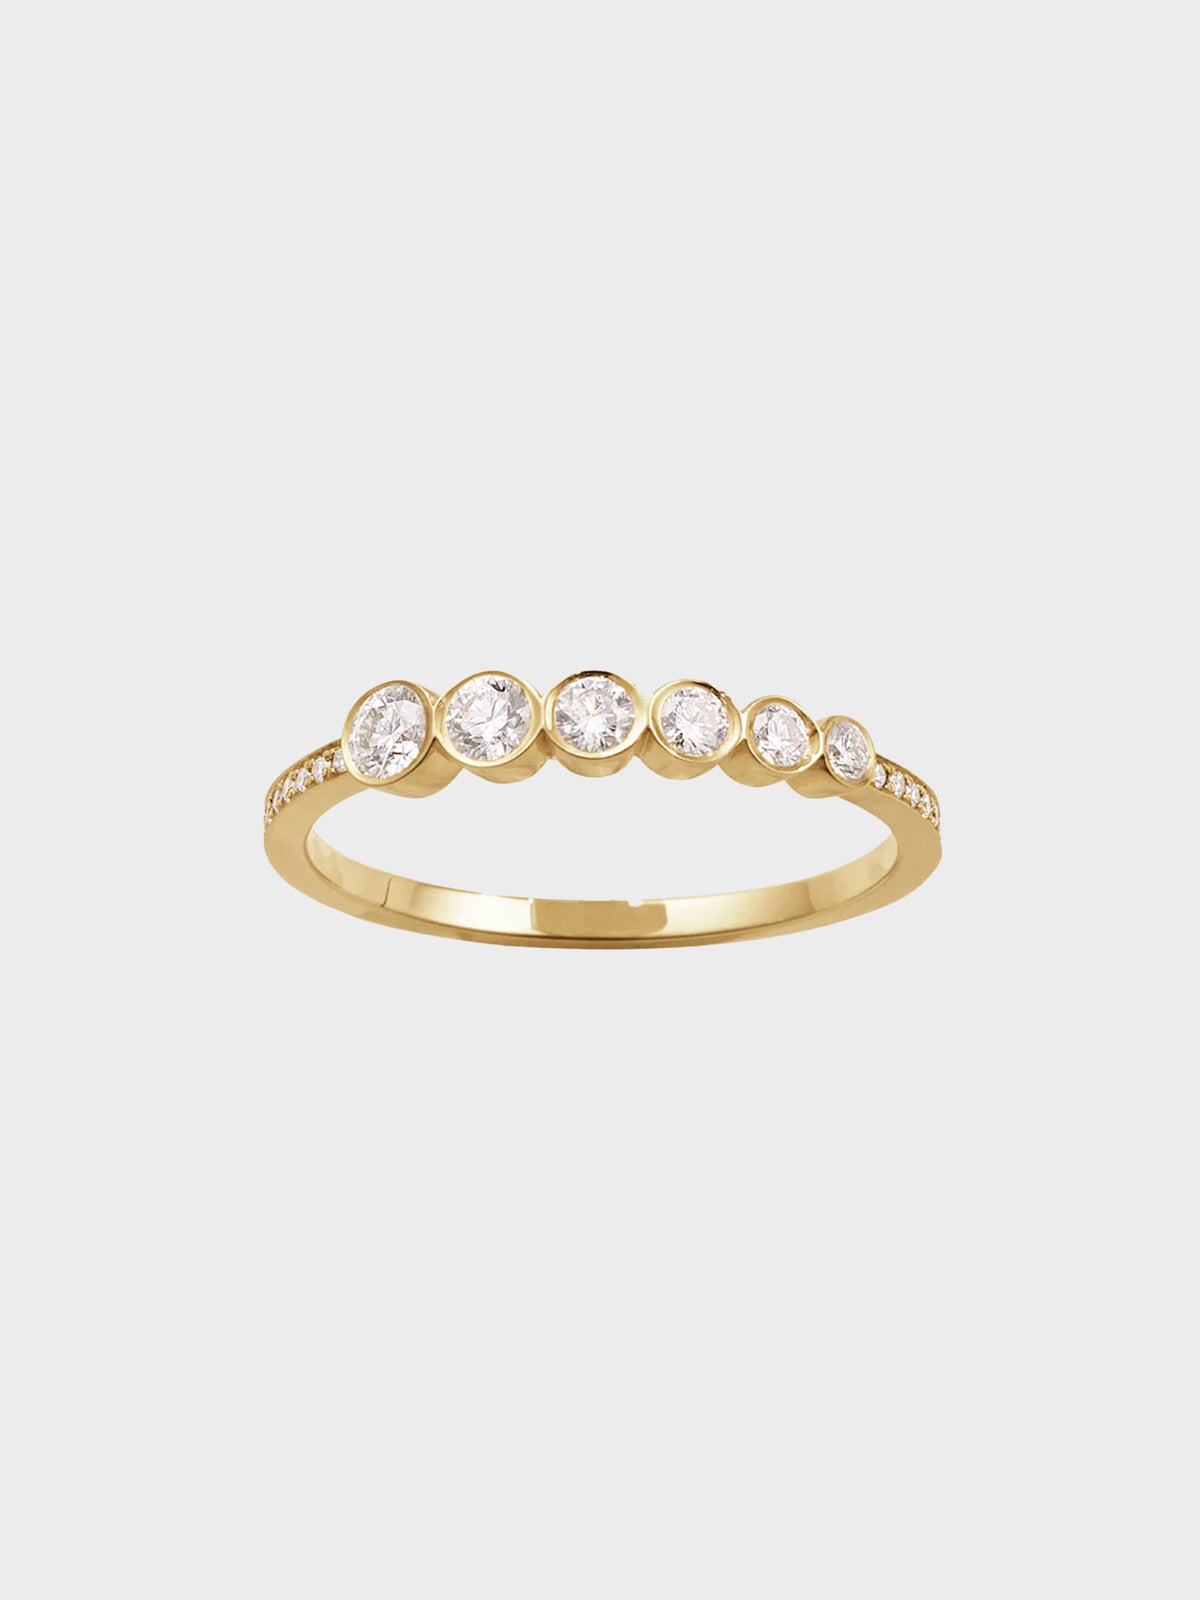 Sophie Bille Brahe - Pleine Lune Diamant Ring in 18k Yellow Gold